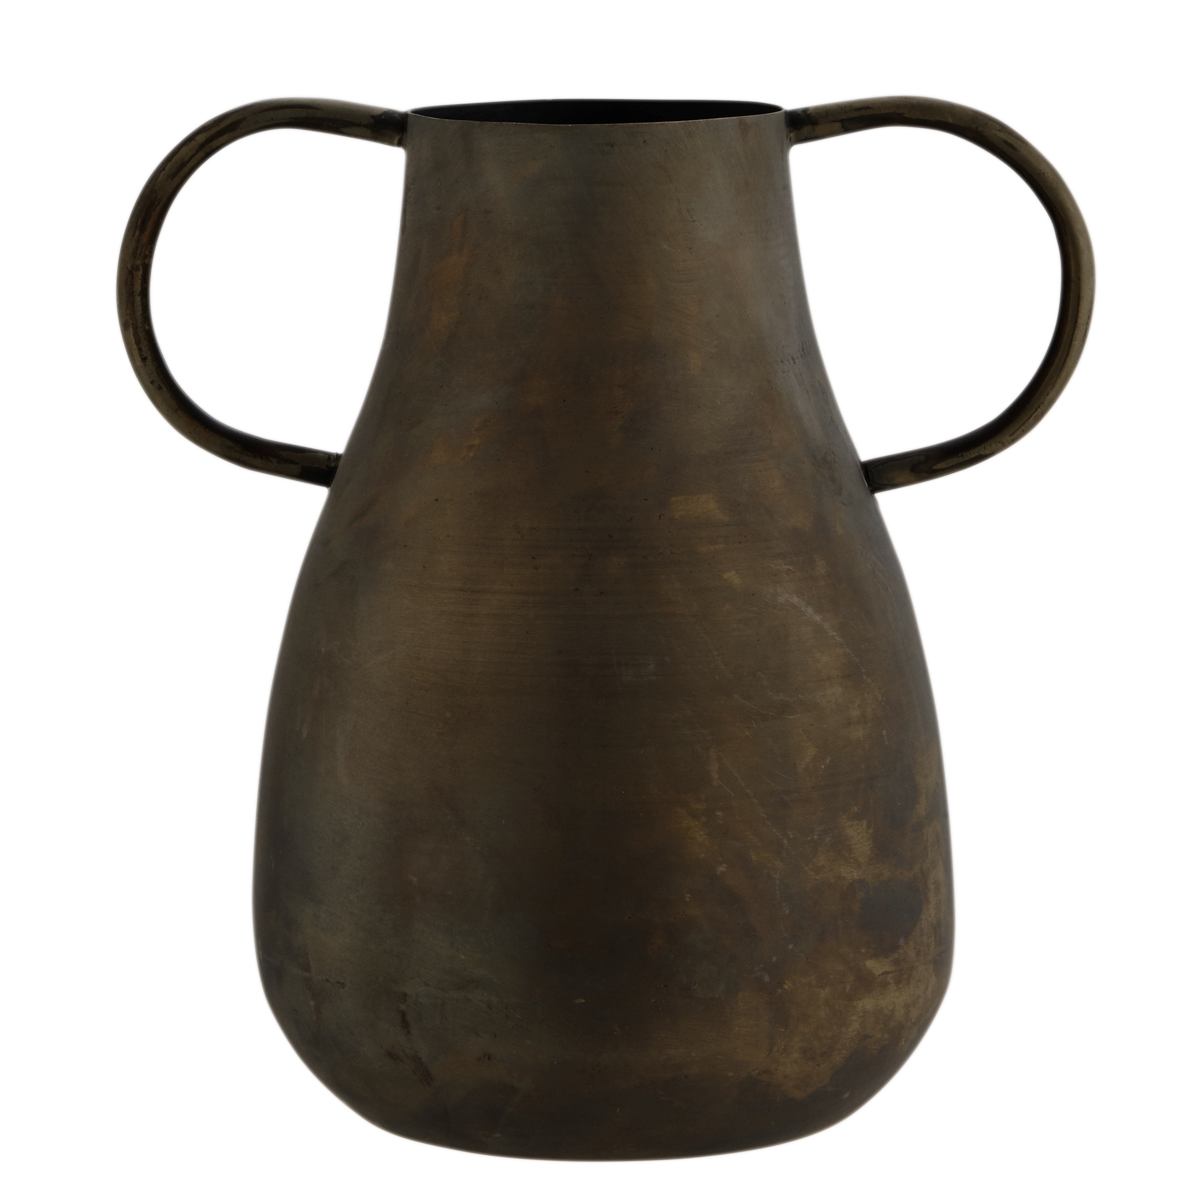 Iron vase w/ handles